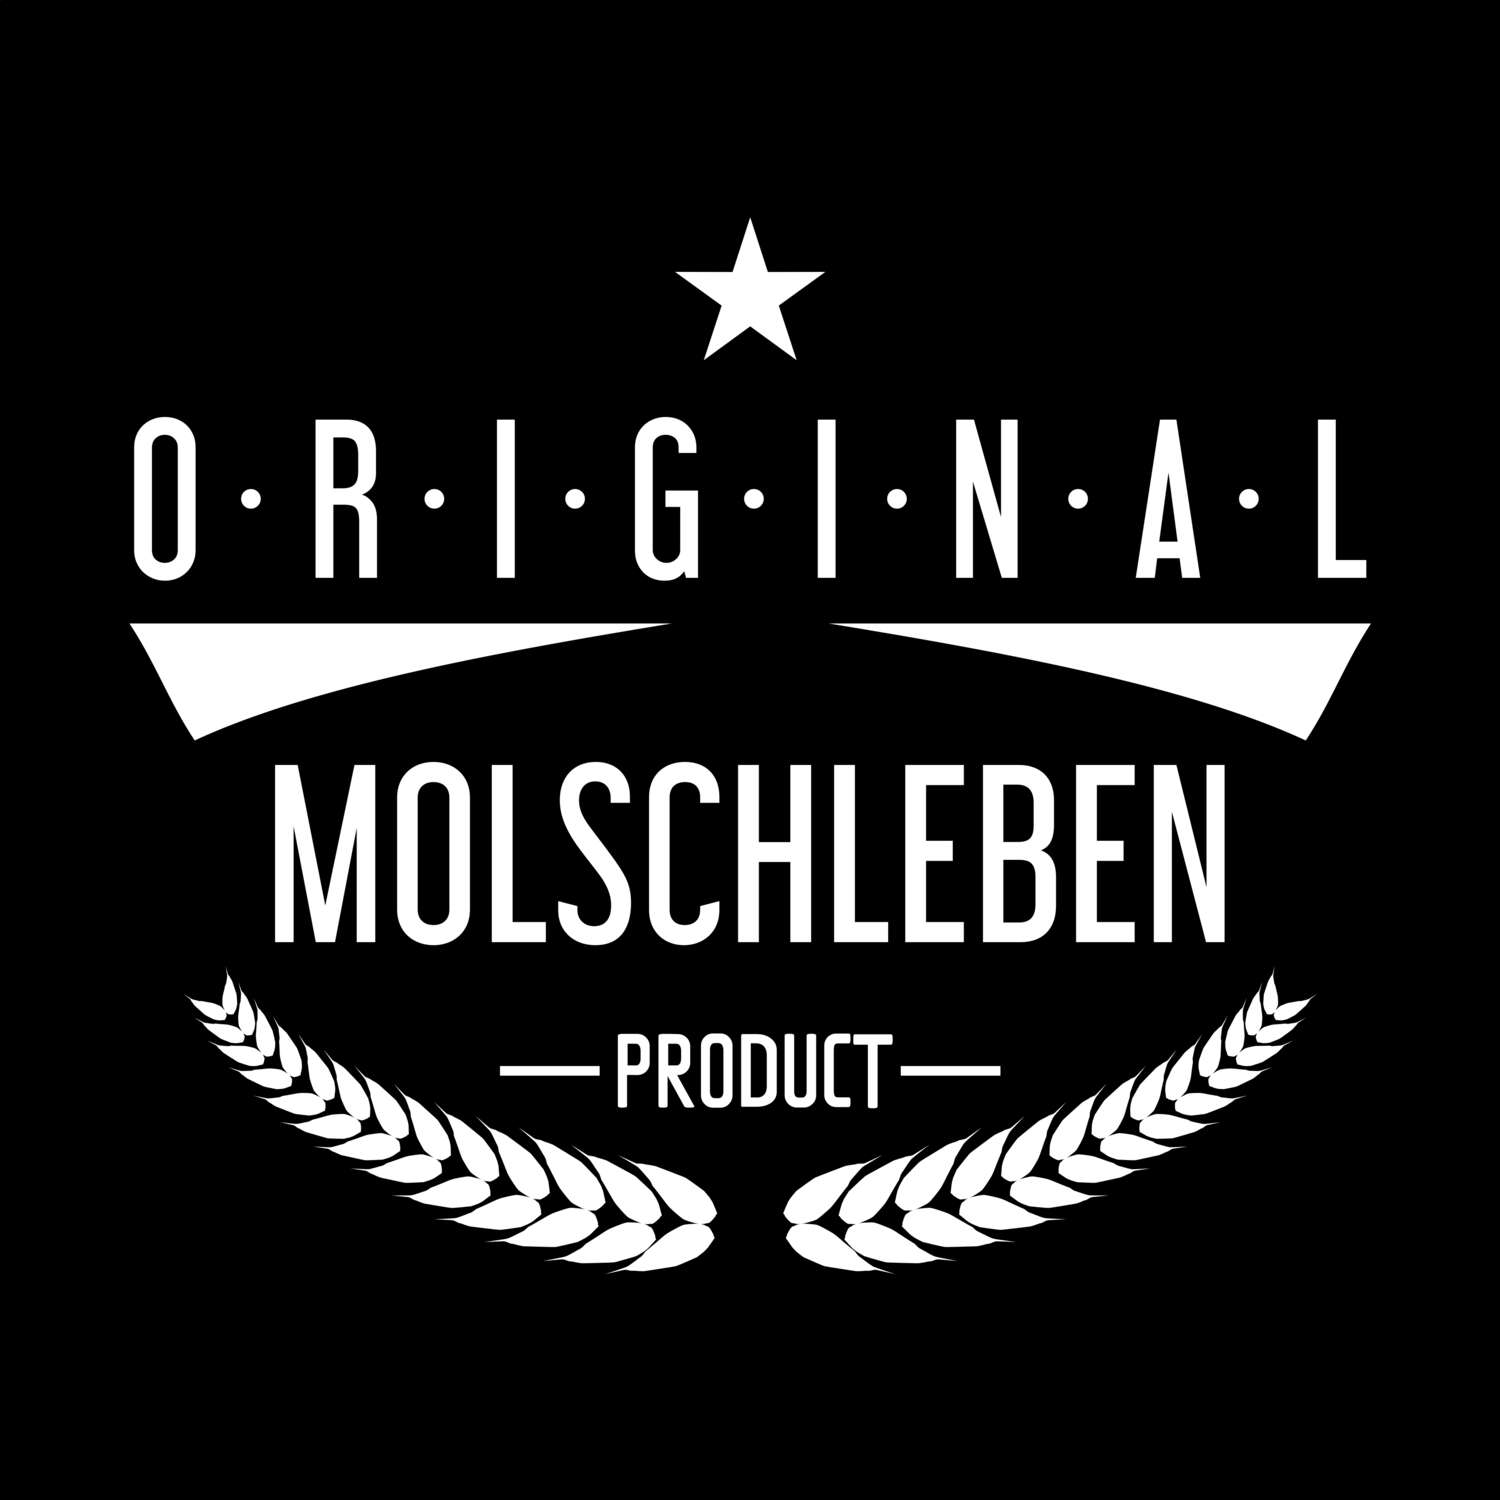 Molschleben T-Shirt »Original Product«